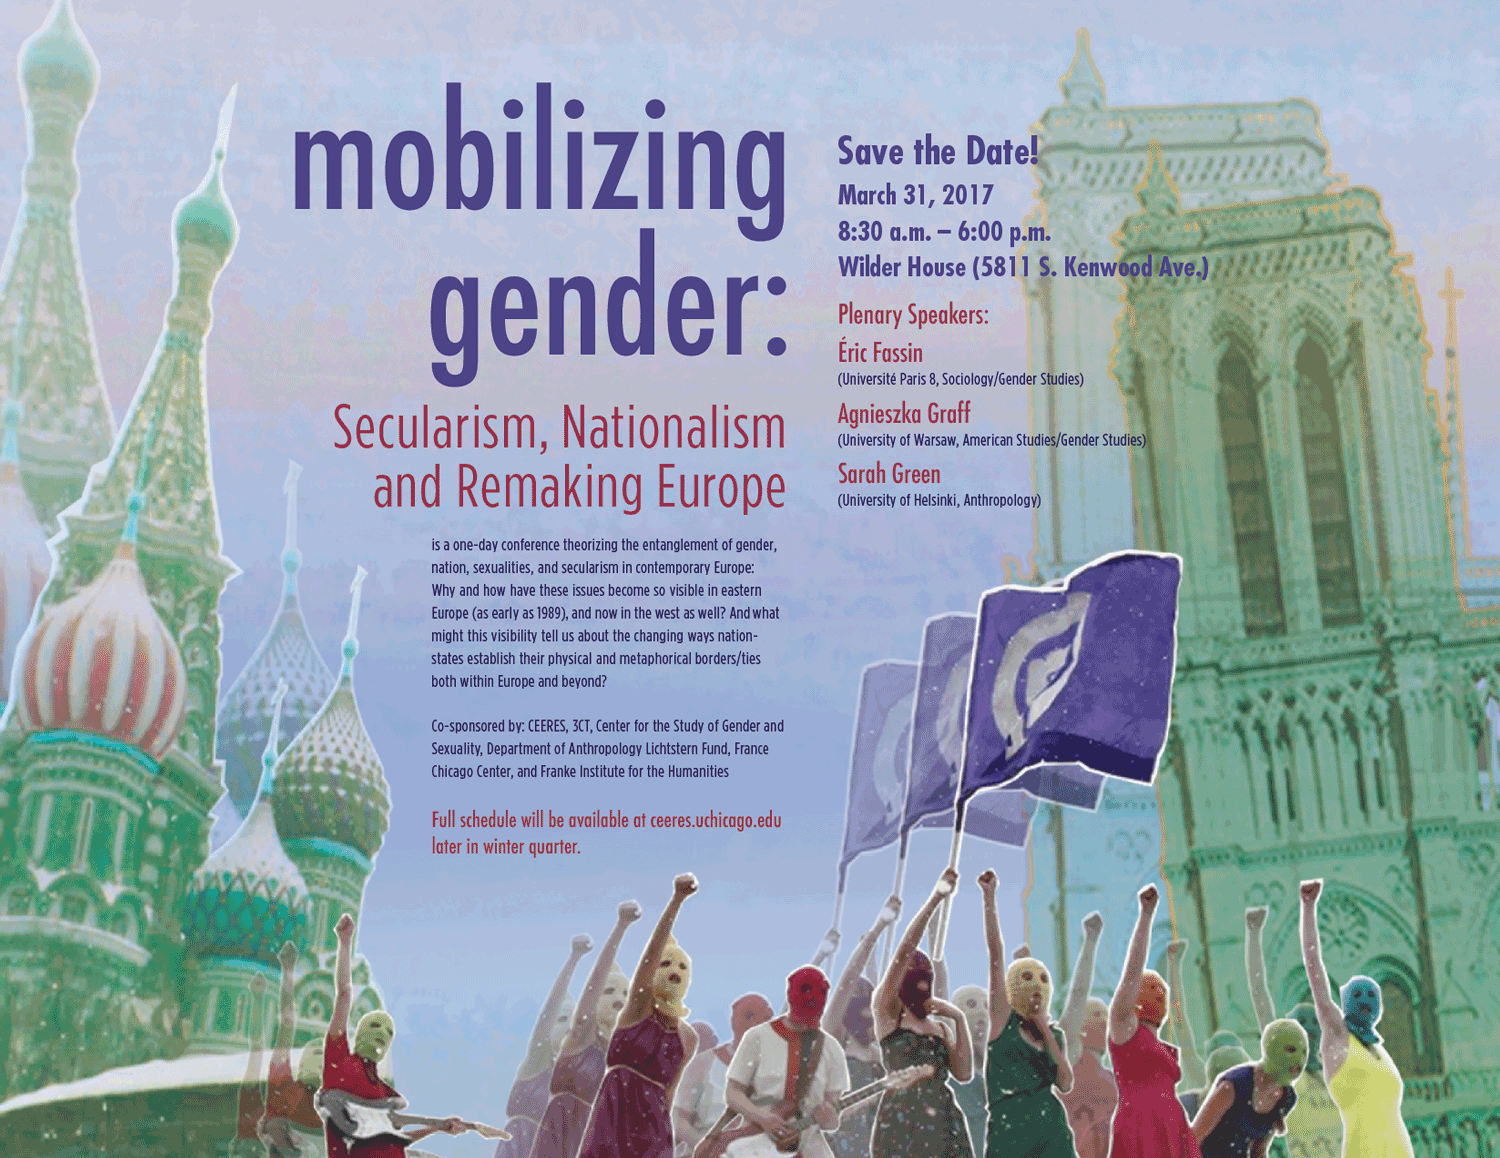 poster for Mobilizing Gender event